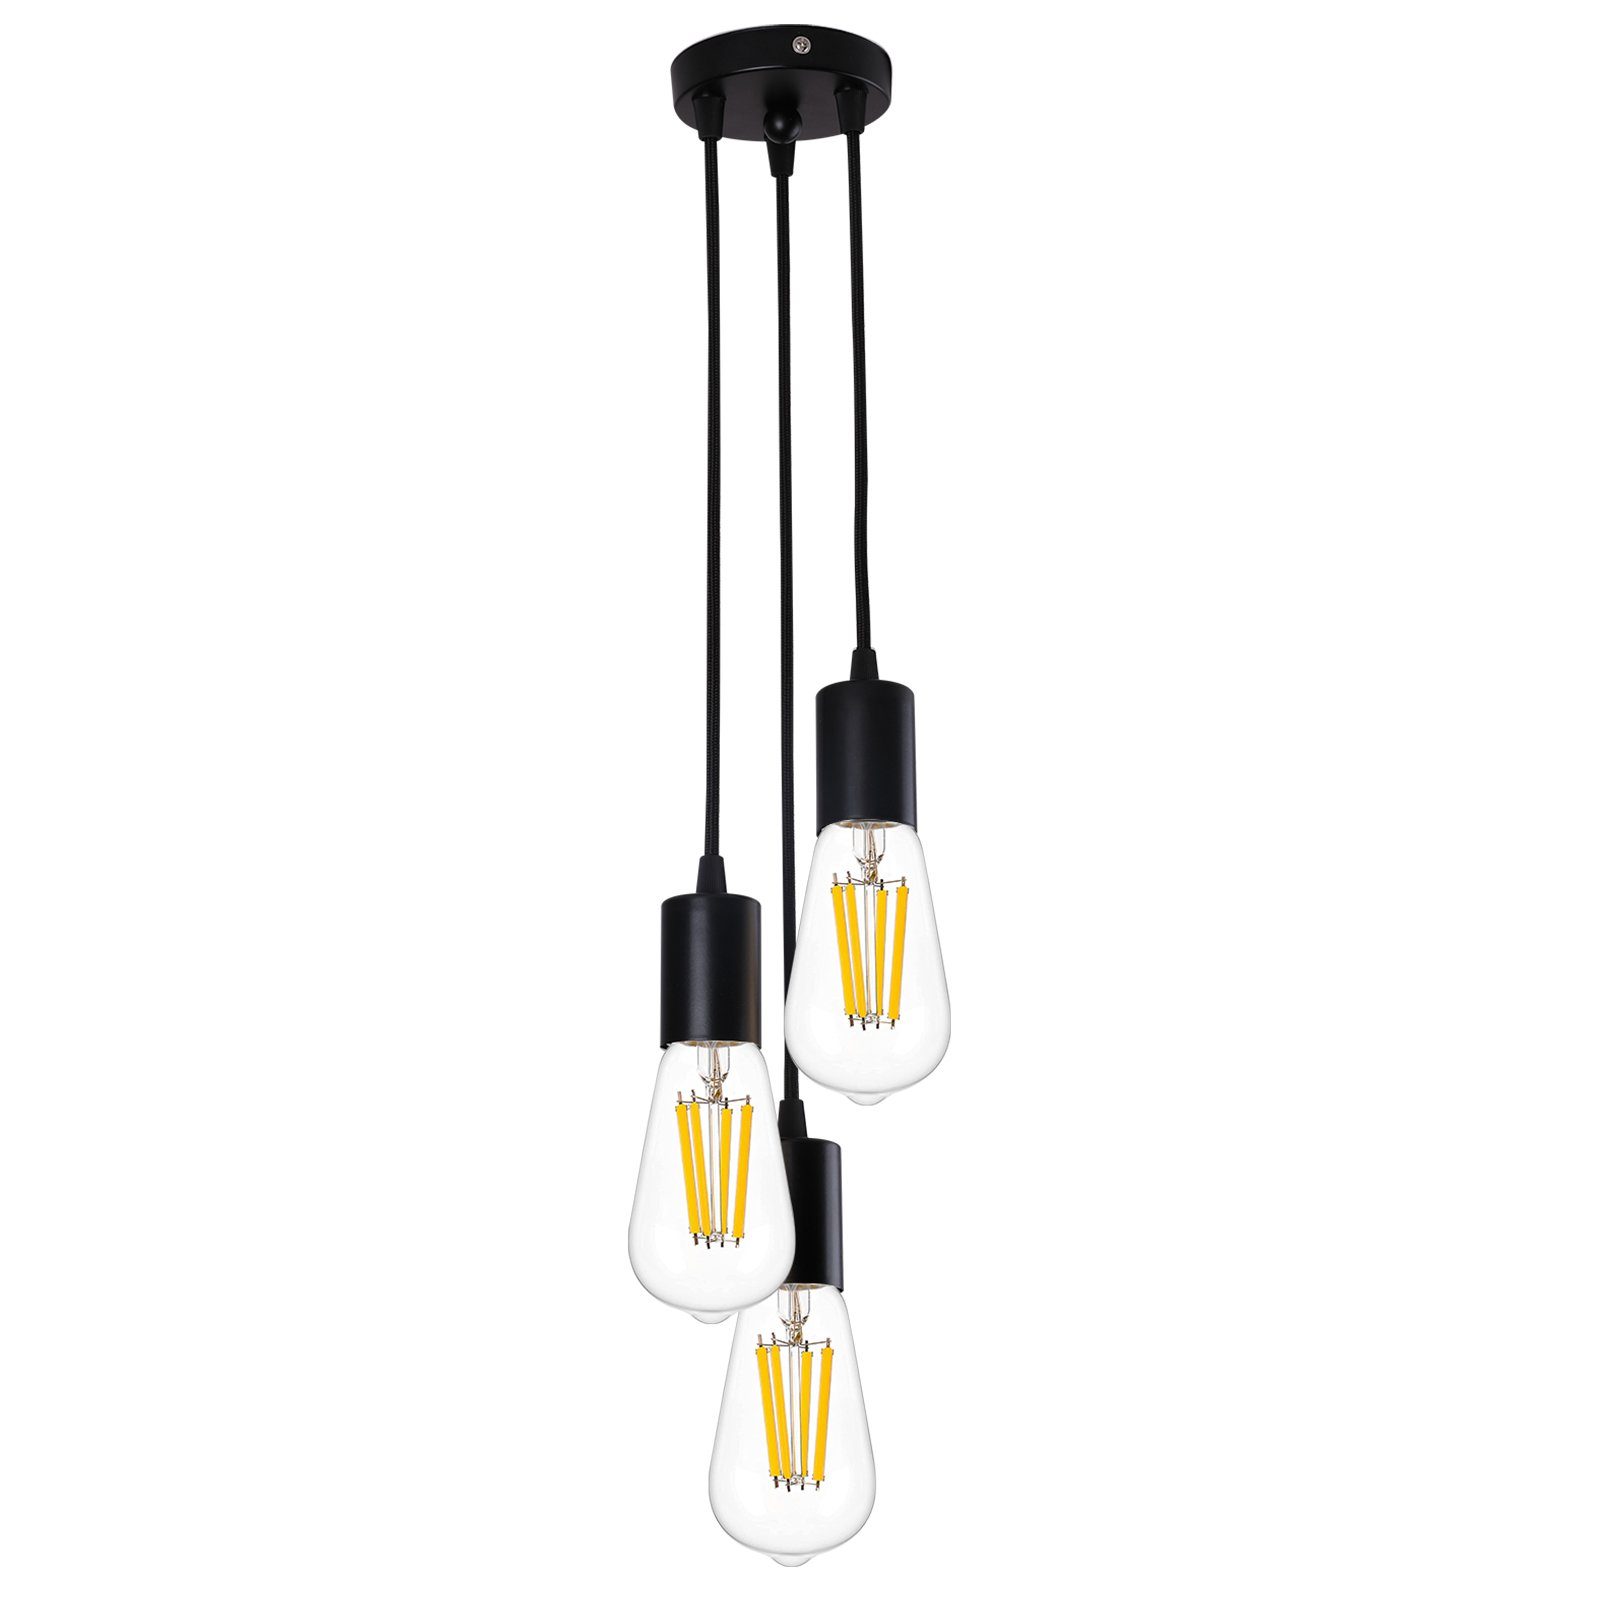 Rosnek LED Pendelleuchte E27, 3-Lichter, für Schlafzimmer Wohnzimmer Restaurant Bar Cafe Deko, Glühbirnen nicht enthalten Schwarz